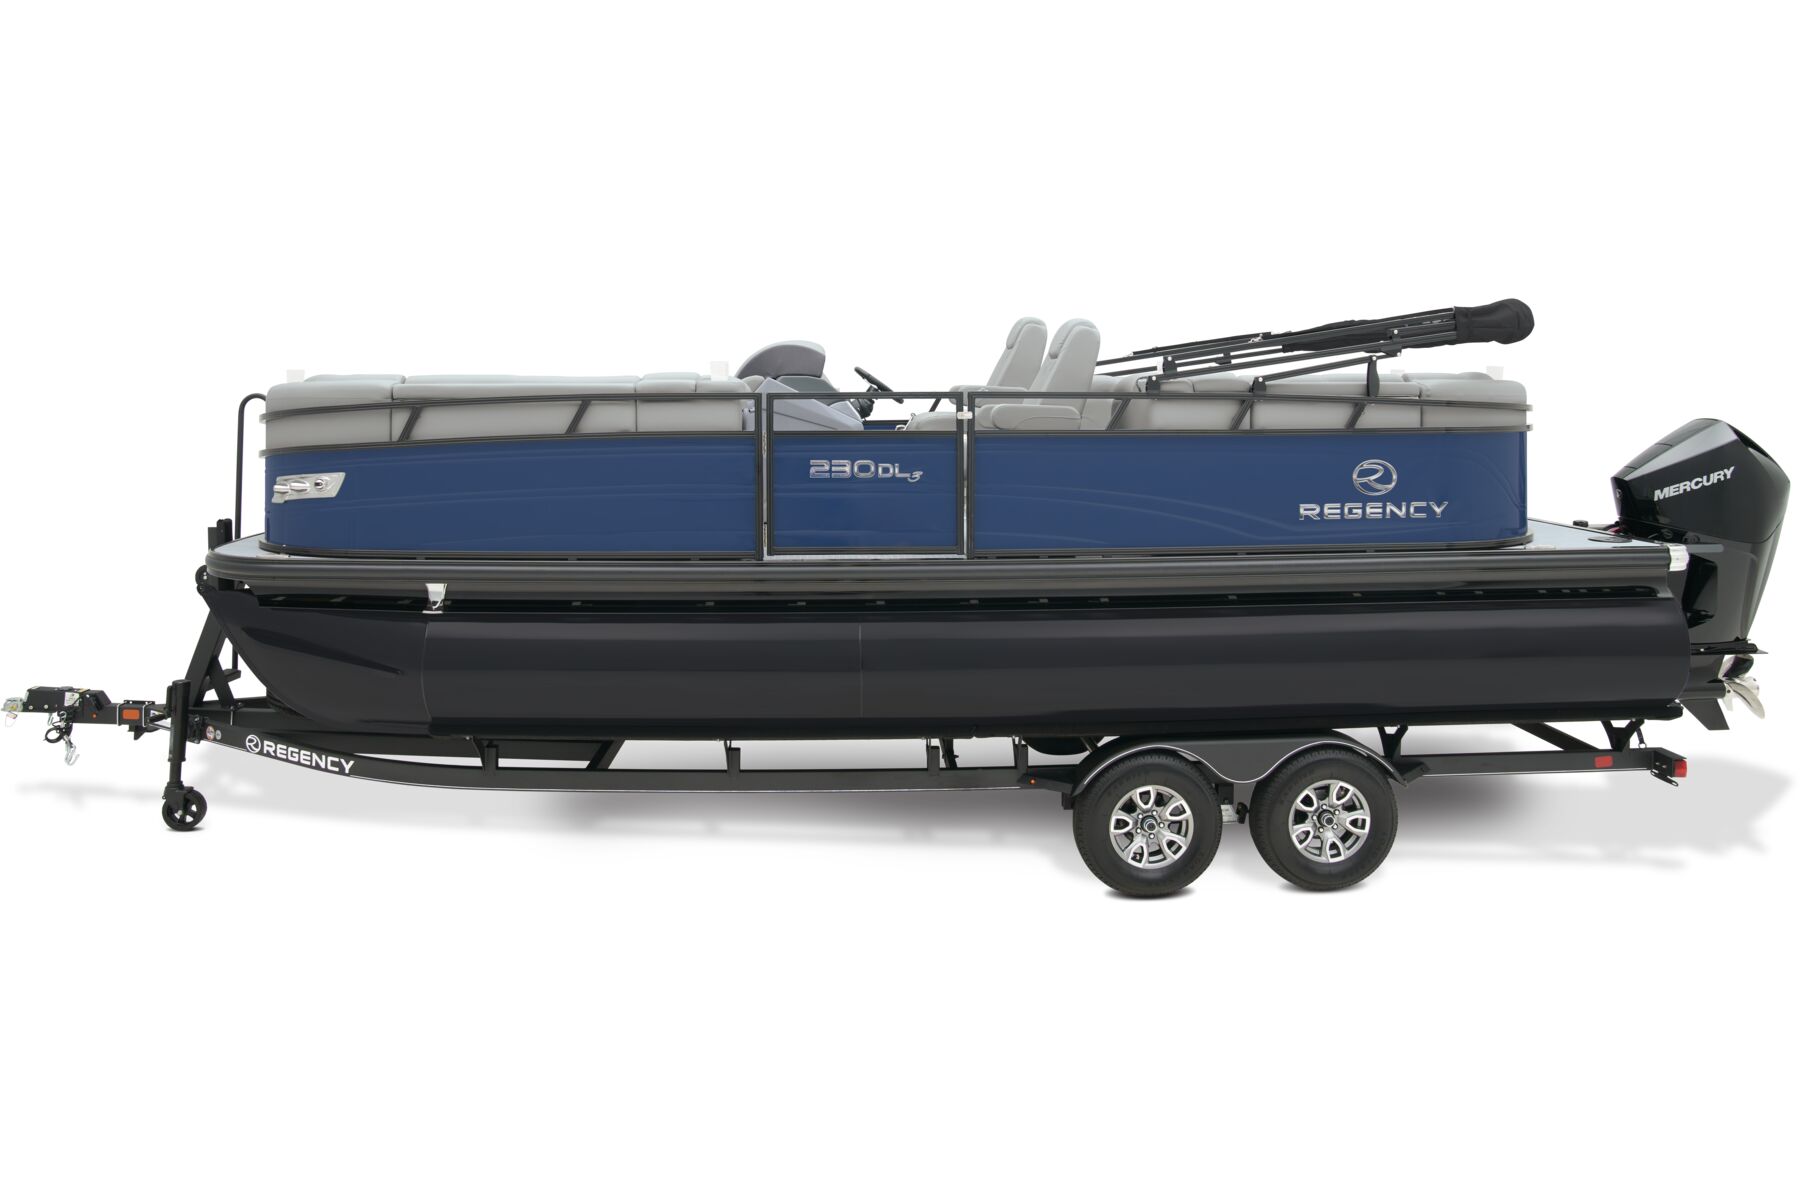 230 DL3 - REGENCY Pontoon Boat